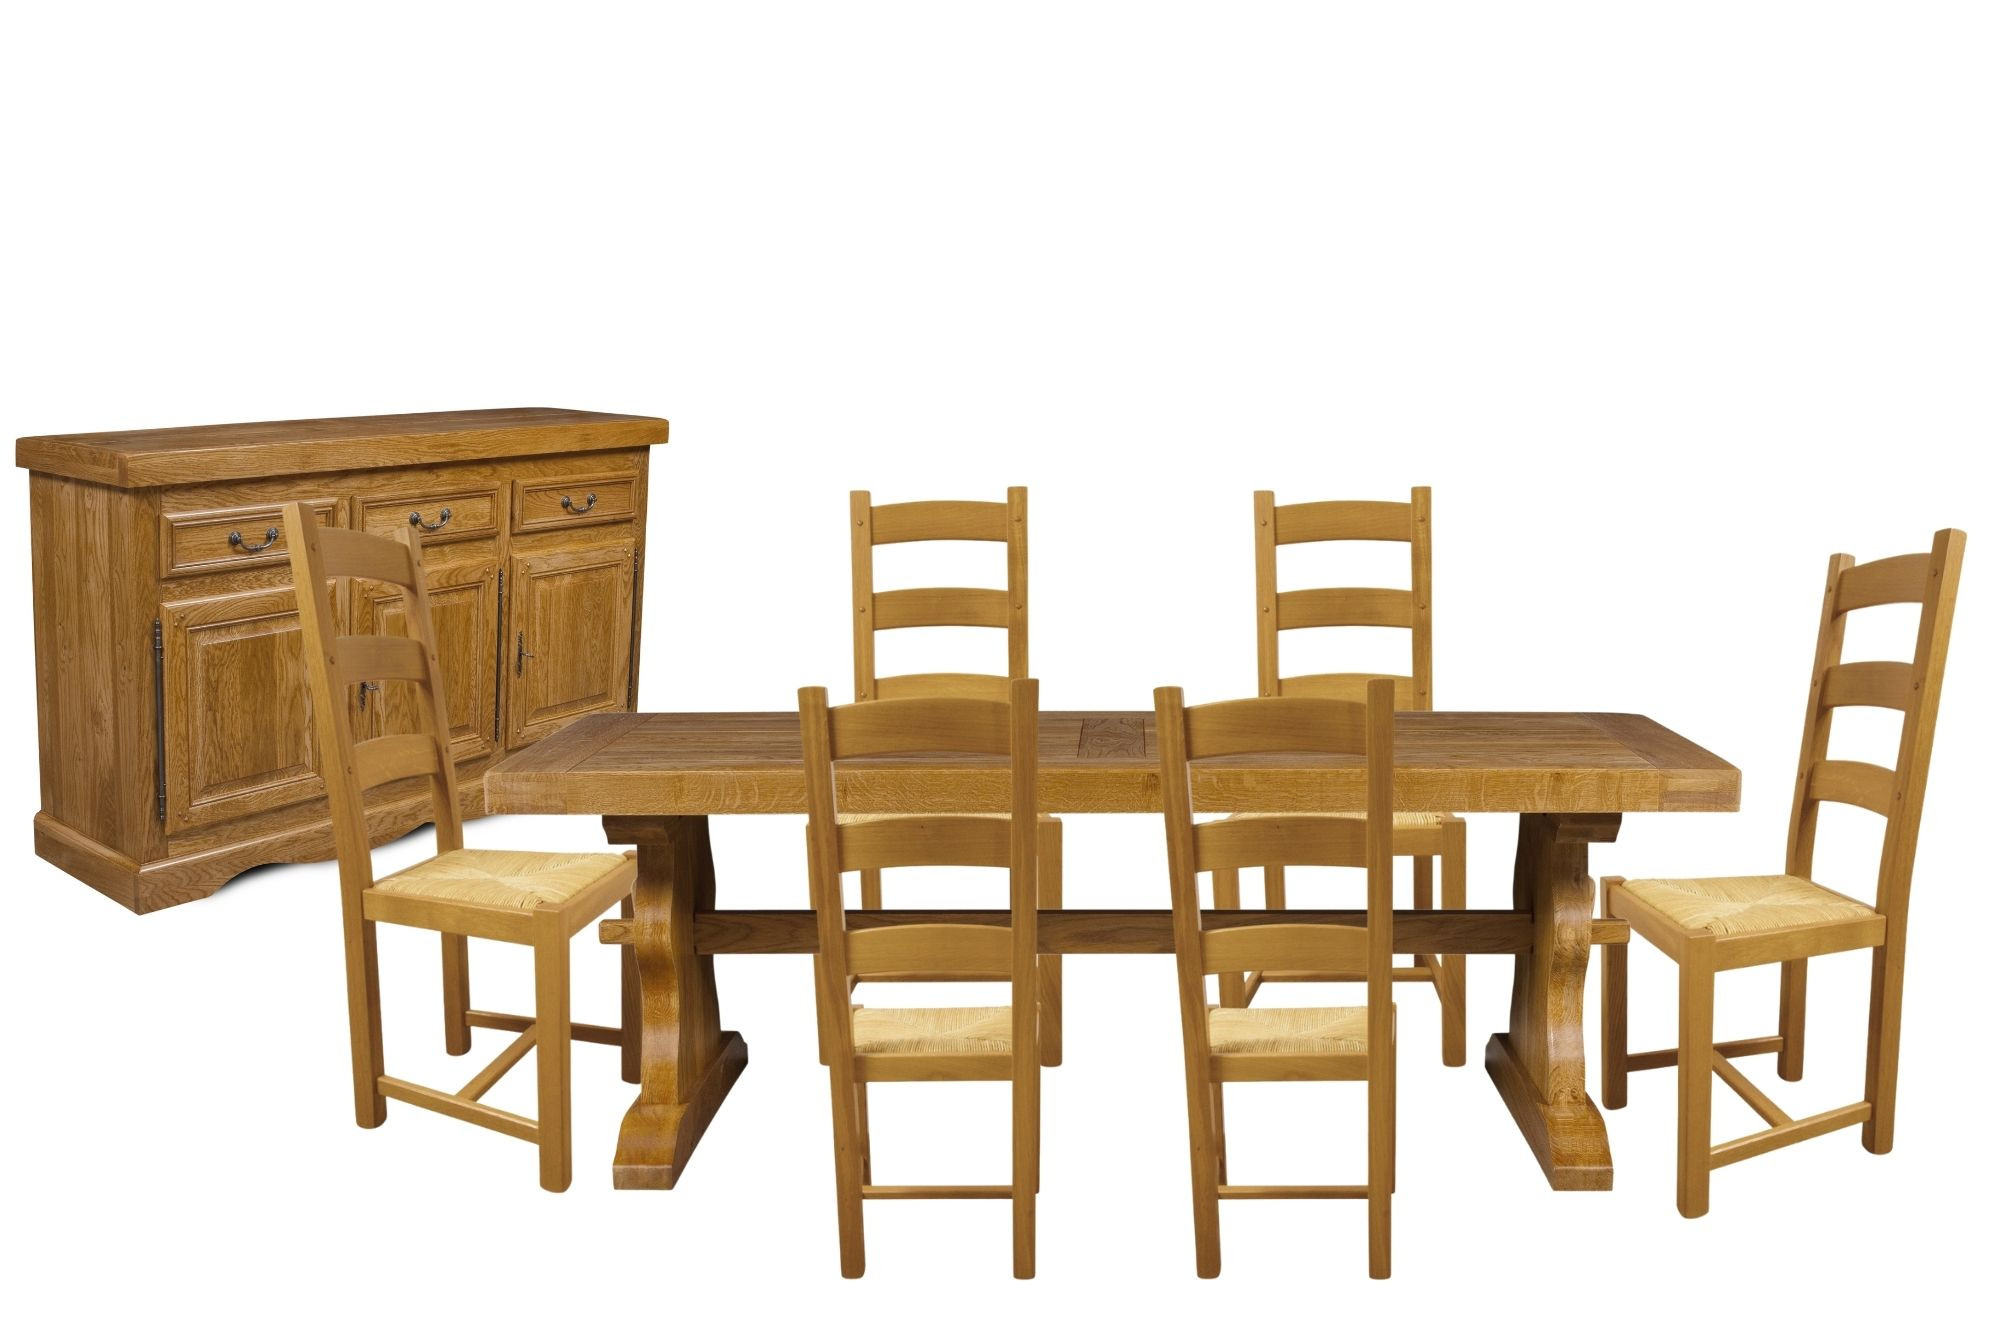 Salle à manger en bois massif : buffet, table et 6 chaises rustiques en chêne